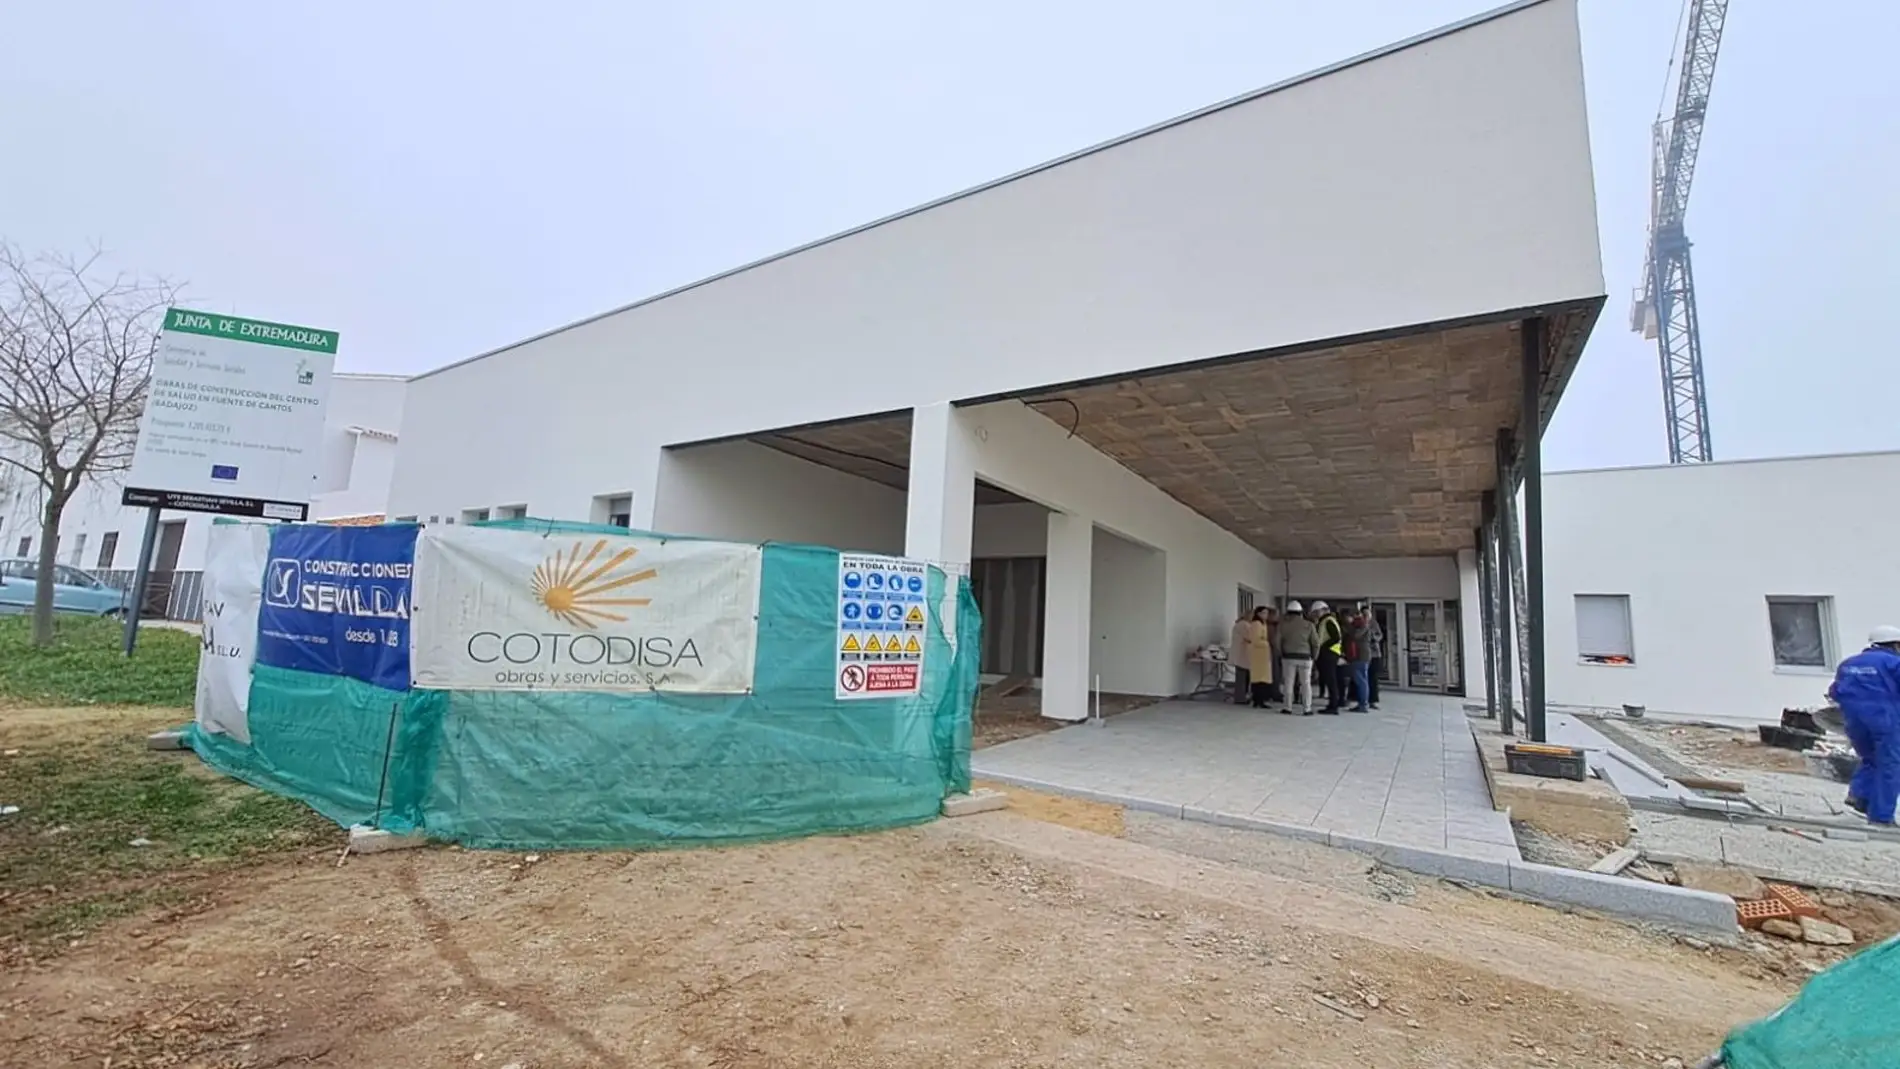 El nuevo Centro de Salud de Fuente de Cantos contará con más de 1.800 metros de superficie y una inversión de 3,3 millones